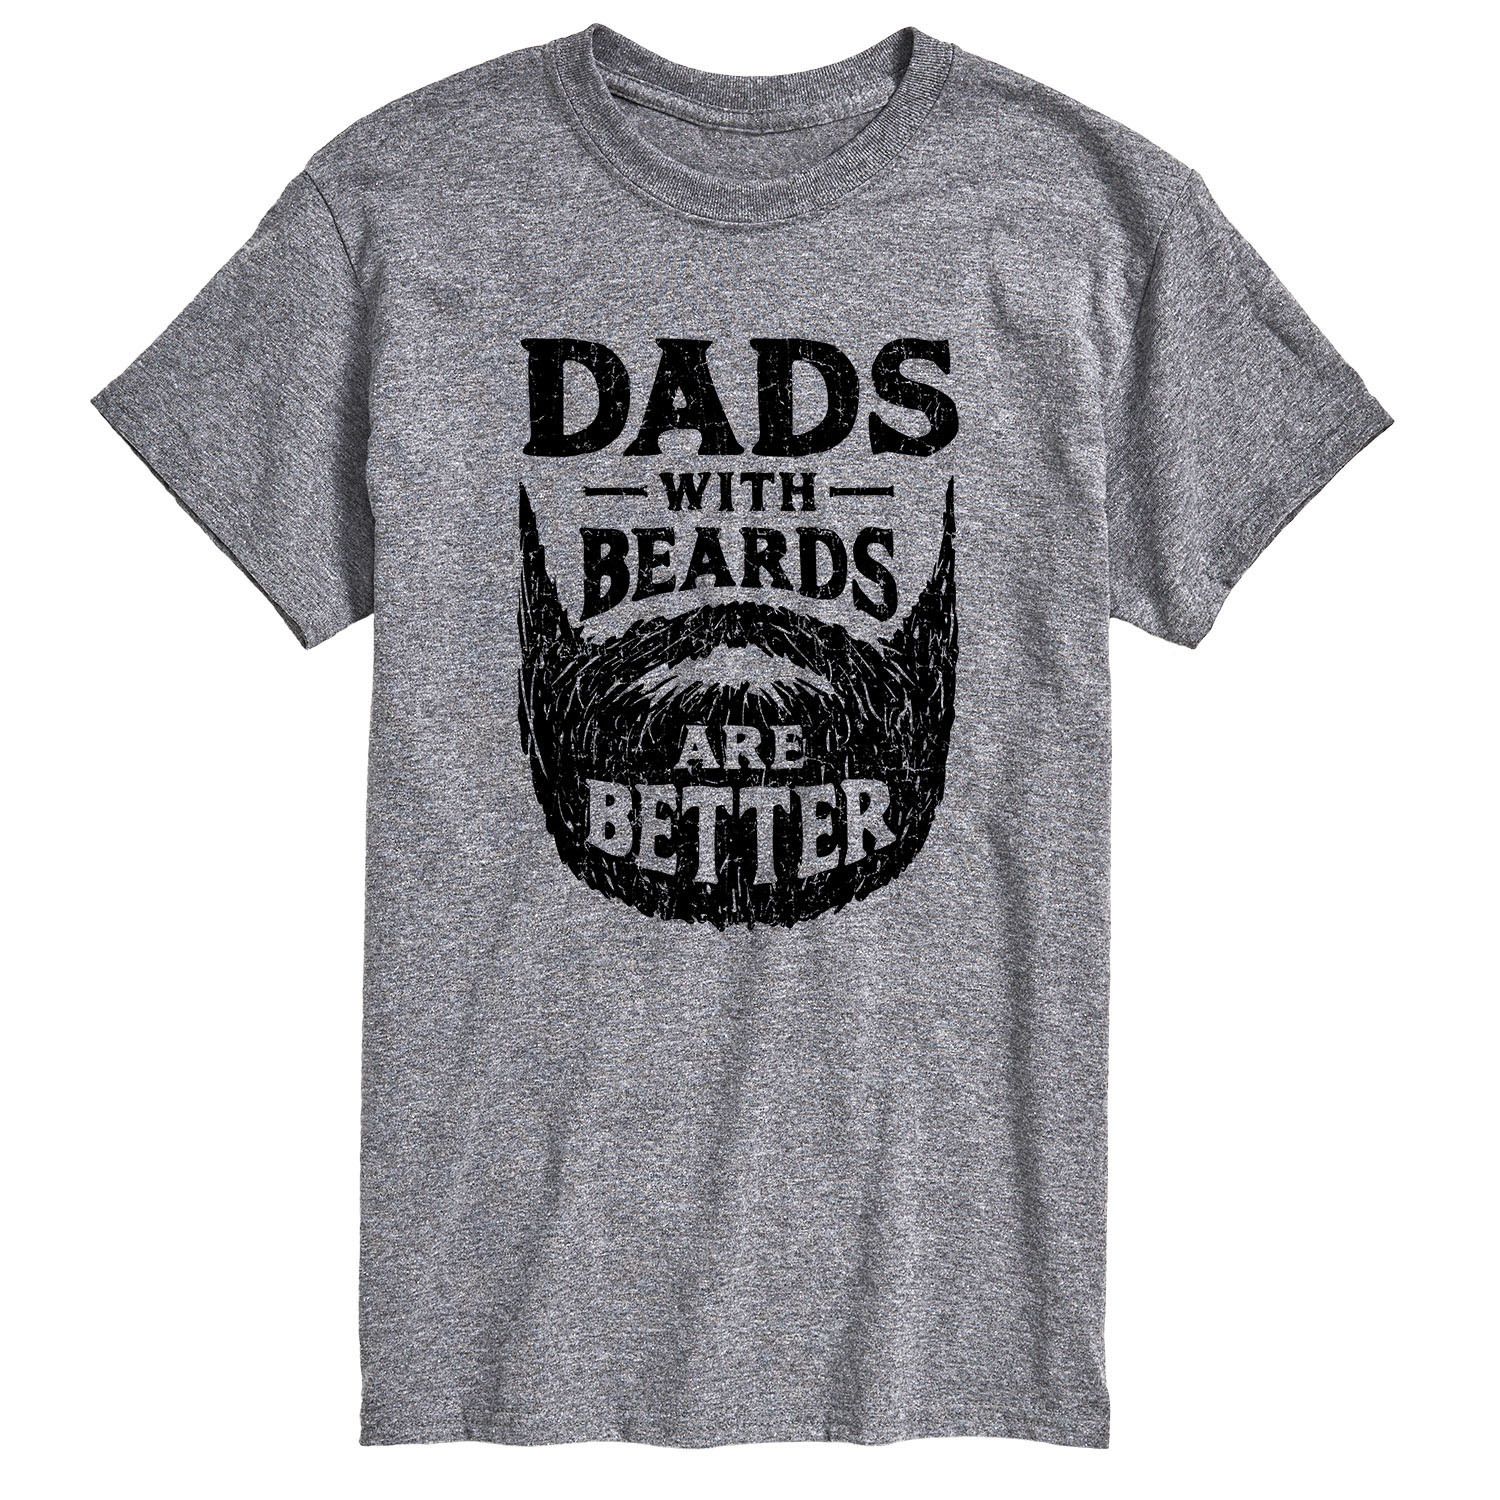 Мужская футболка «Папы с бородой» Better Licensed Character мужская футболка для папы game licensed character